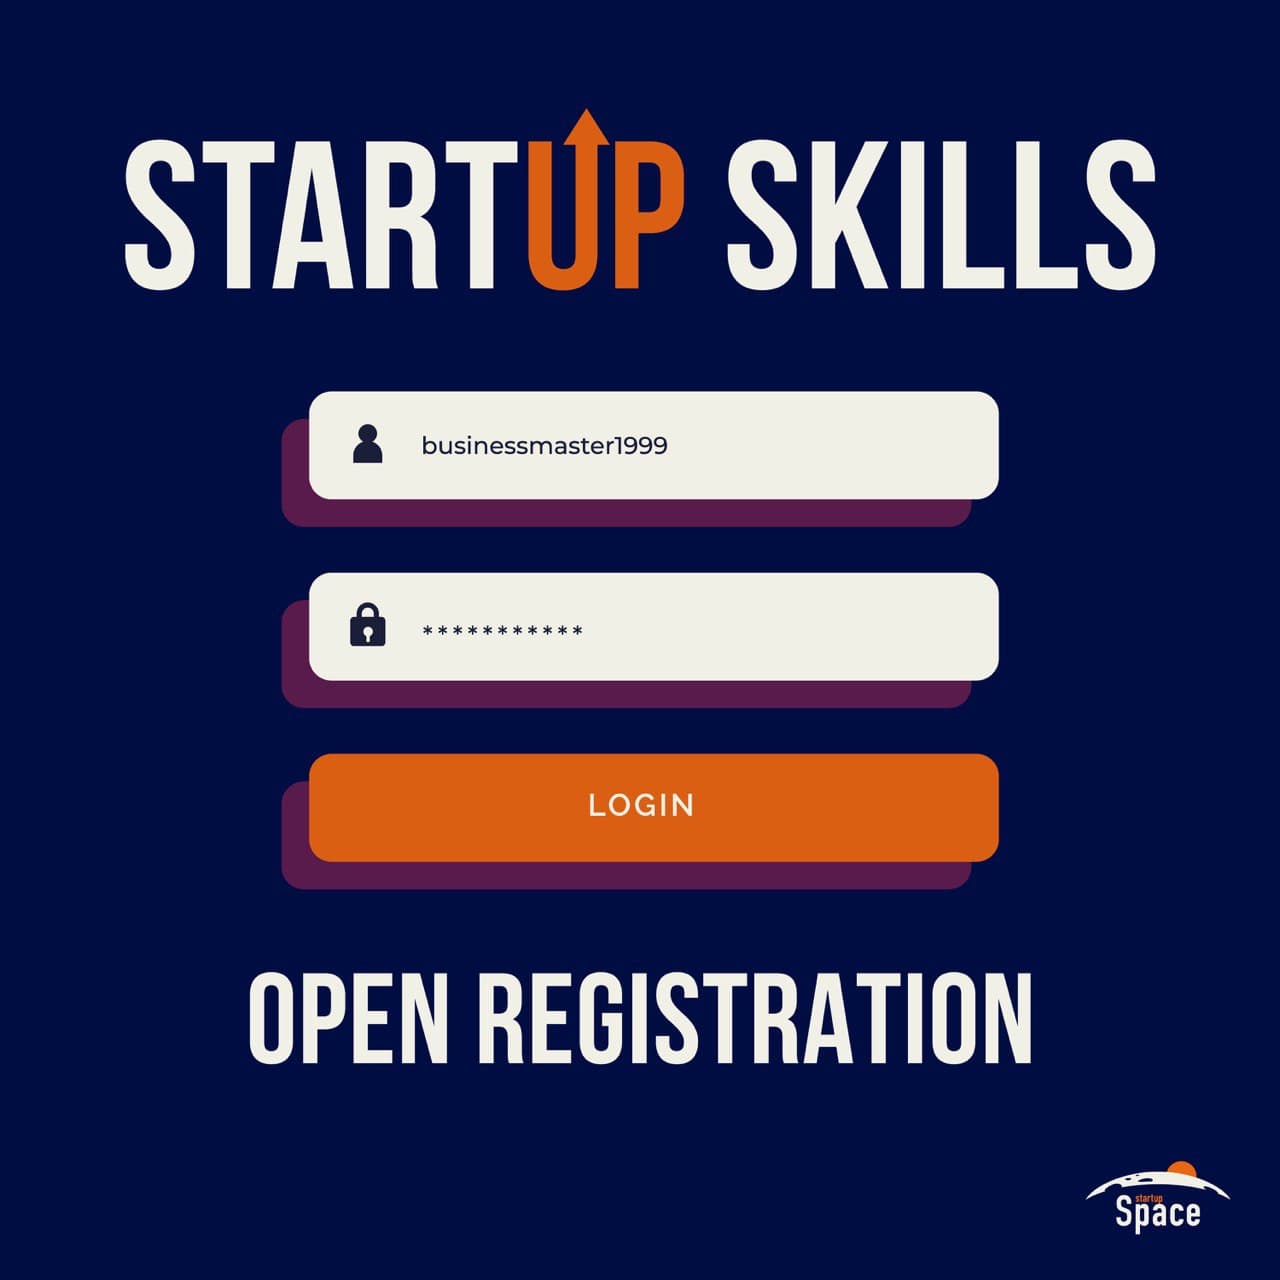 Совместная со стартап-центром БГУ образовательная программа StartUp Skills стартует сегодня в event-пространстве “210 metrov” на Чапаева 3